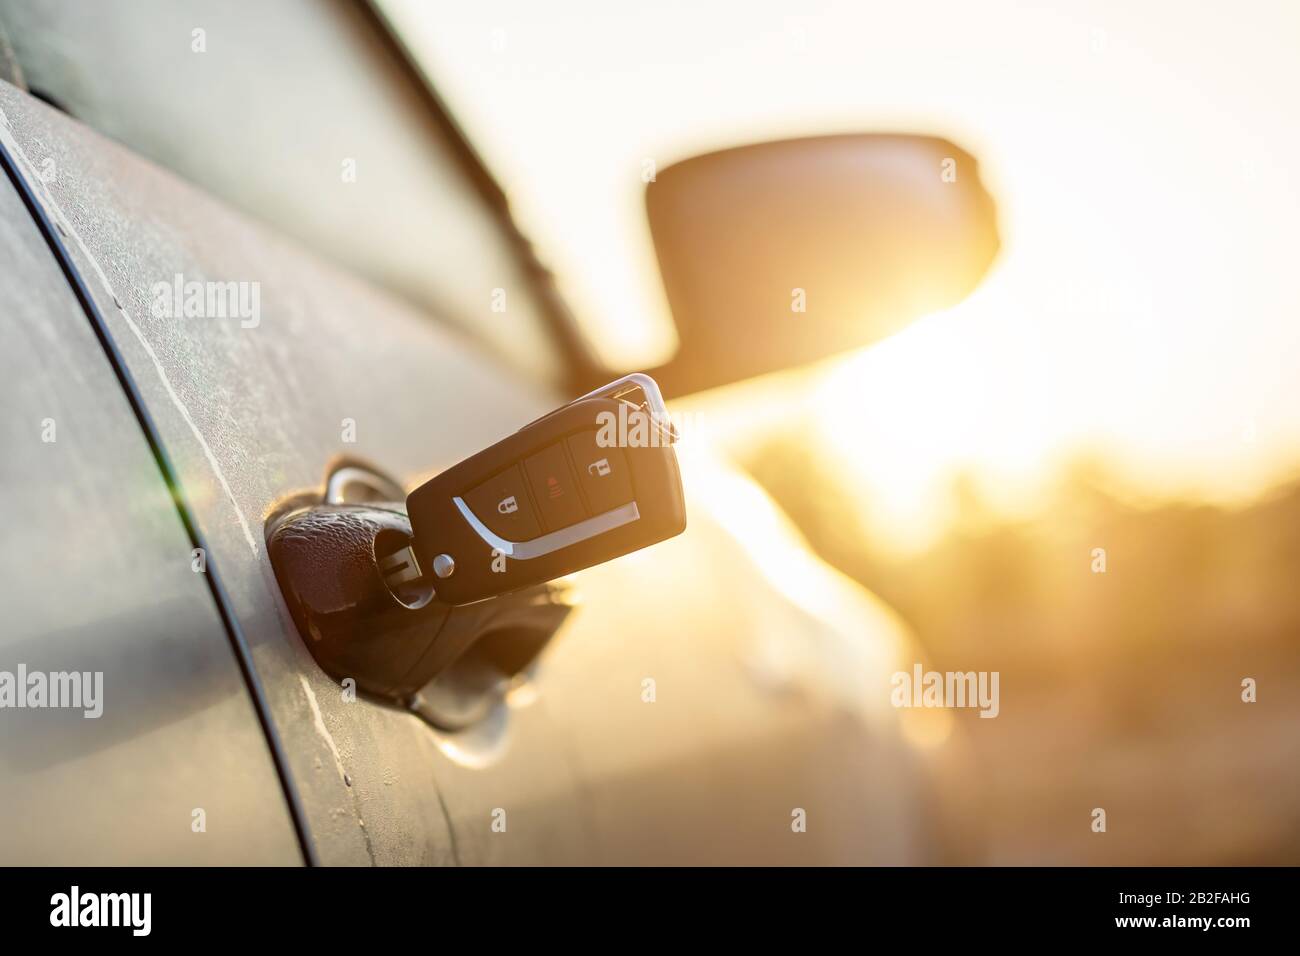 Olvídate del concepto clave: Las llaves del coche estaban enchufadas en la  puerta plateada del coche en el aparcamiento exterior con efecto de luz  solar por la mañana o al atardecer Fotografía